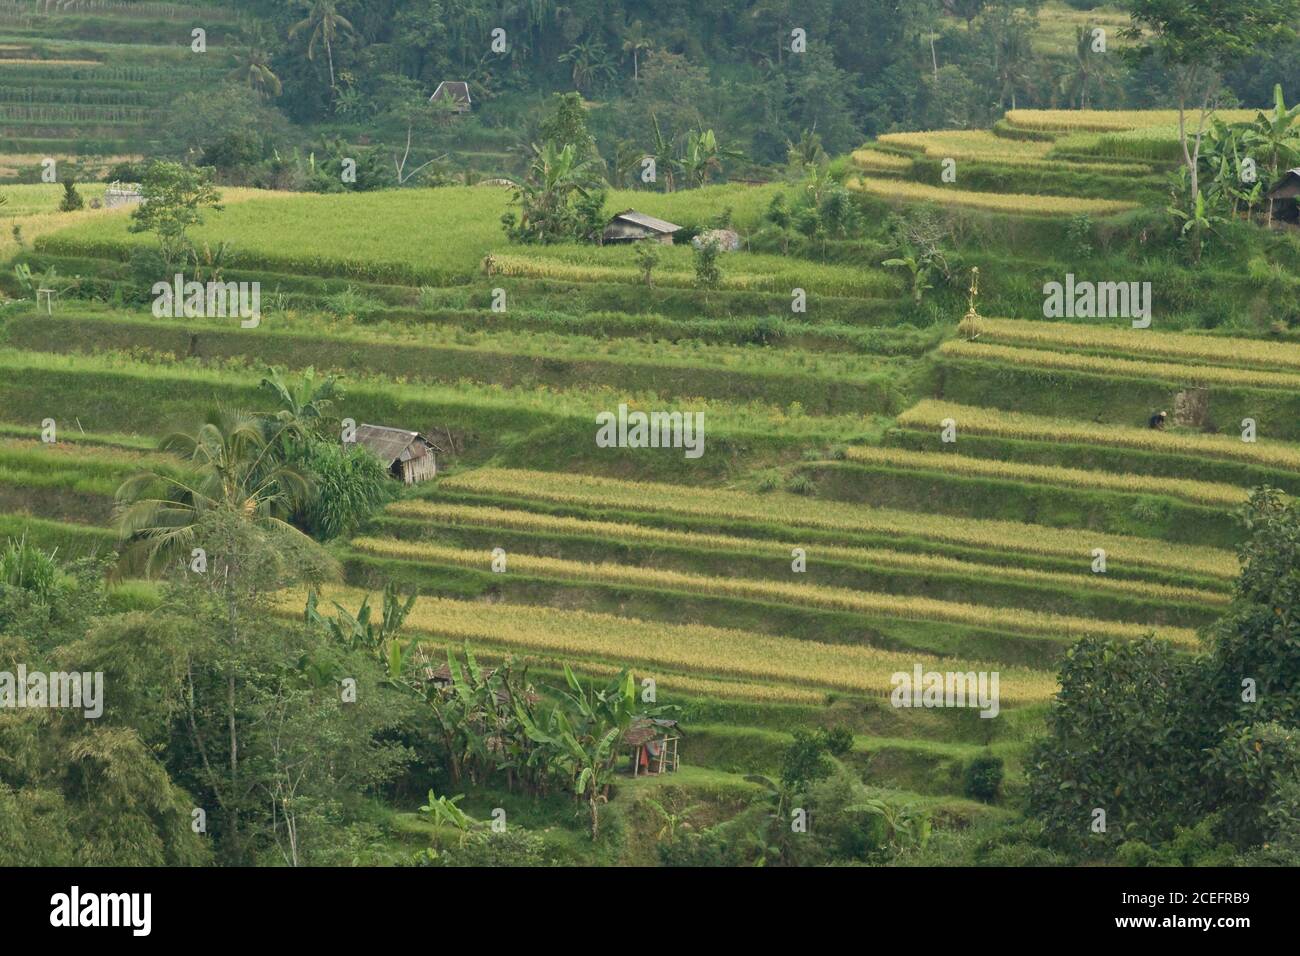 Vue du dessus des marches du sol entre la jungle verte humide En Indonésie, jour ensoleillé Banque D'Images